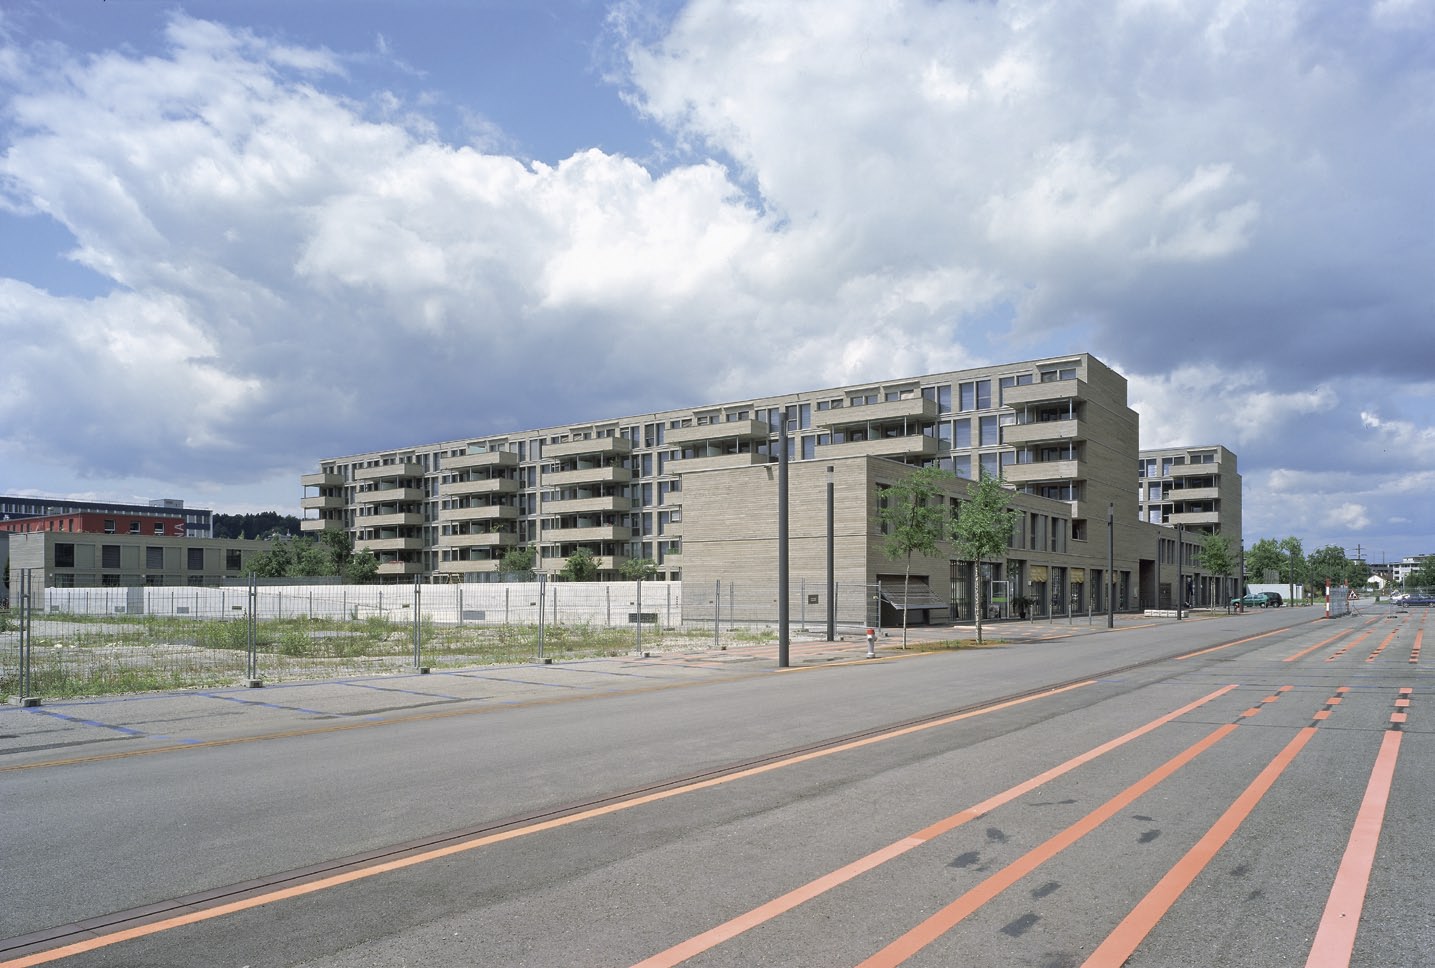 Wohnüberbauung Eulachhof, Winterthur Das Projekt stellt den Auftakt zur Wohnquartierentwicklung auf einer weitläufigen Sulzer-Industriebrache in Oberwinterthur dar.